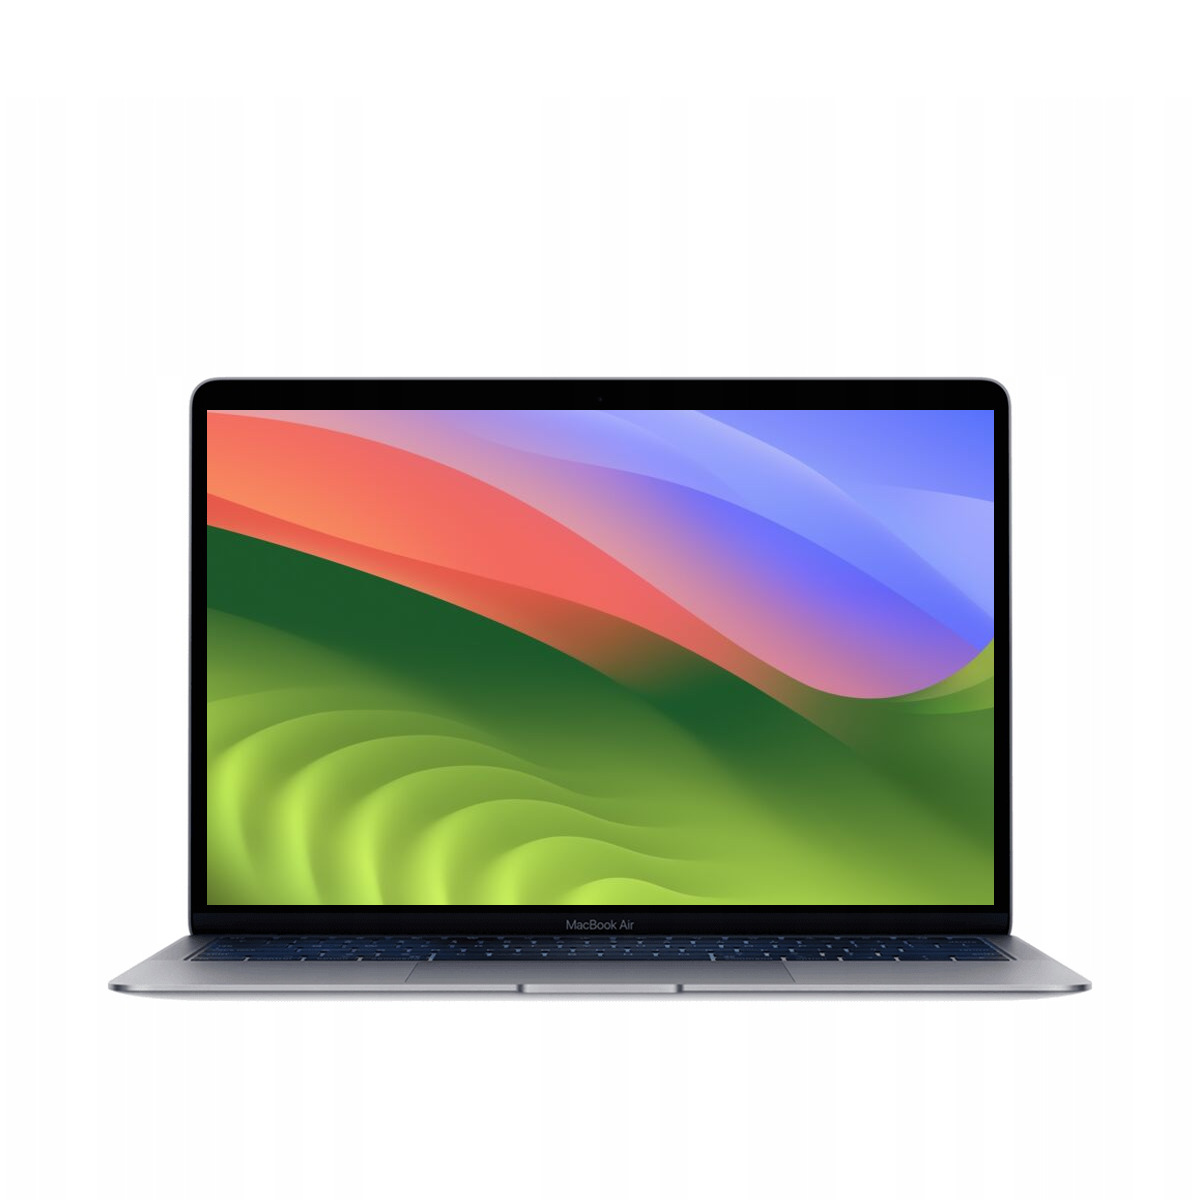 Apple MacBook Air M1 - Wydajność i komfort w nowej odsłonie Szukasz laptopa, który łączy w sobie elegancki design, niesamowitą wydajność i komfort użytkowania? Apple MacBook Air M1 to idealny wybór dla Ciebie!